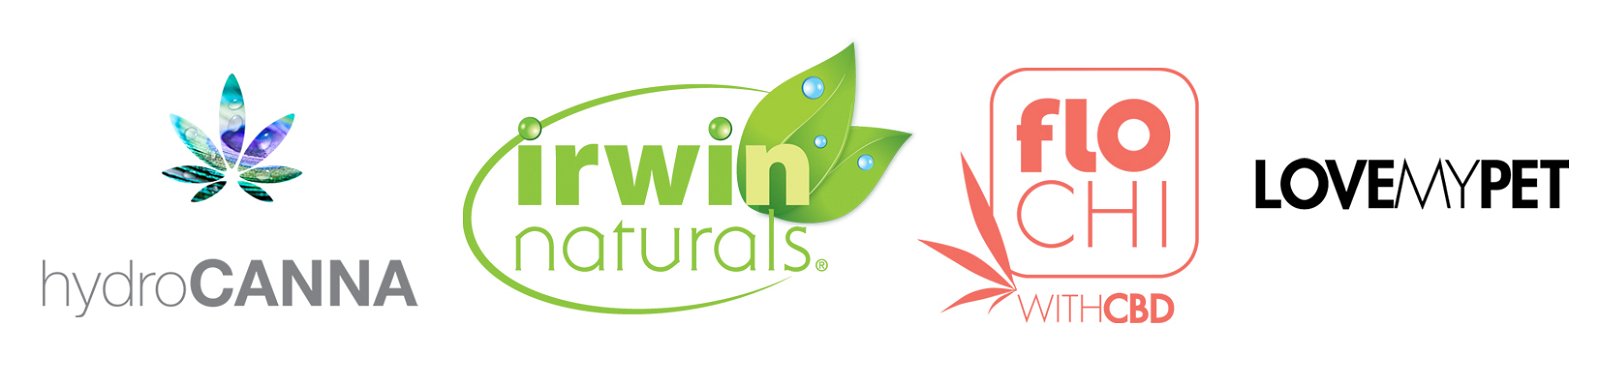 Irwin Naturals | FloChi | HydroCanna | LoveMyPet Logos